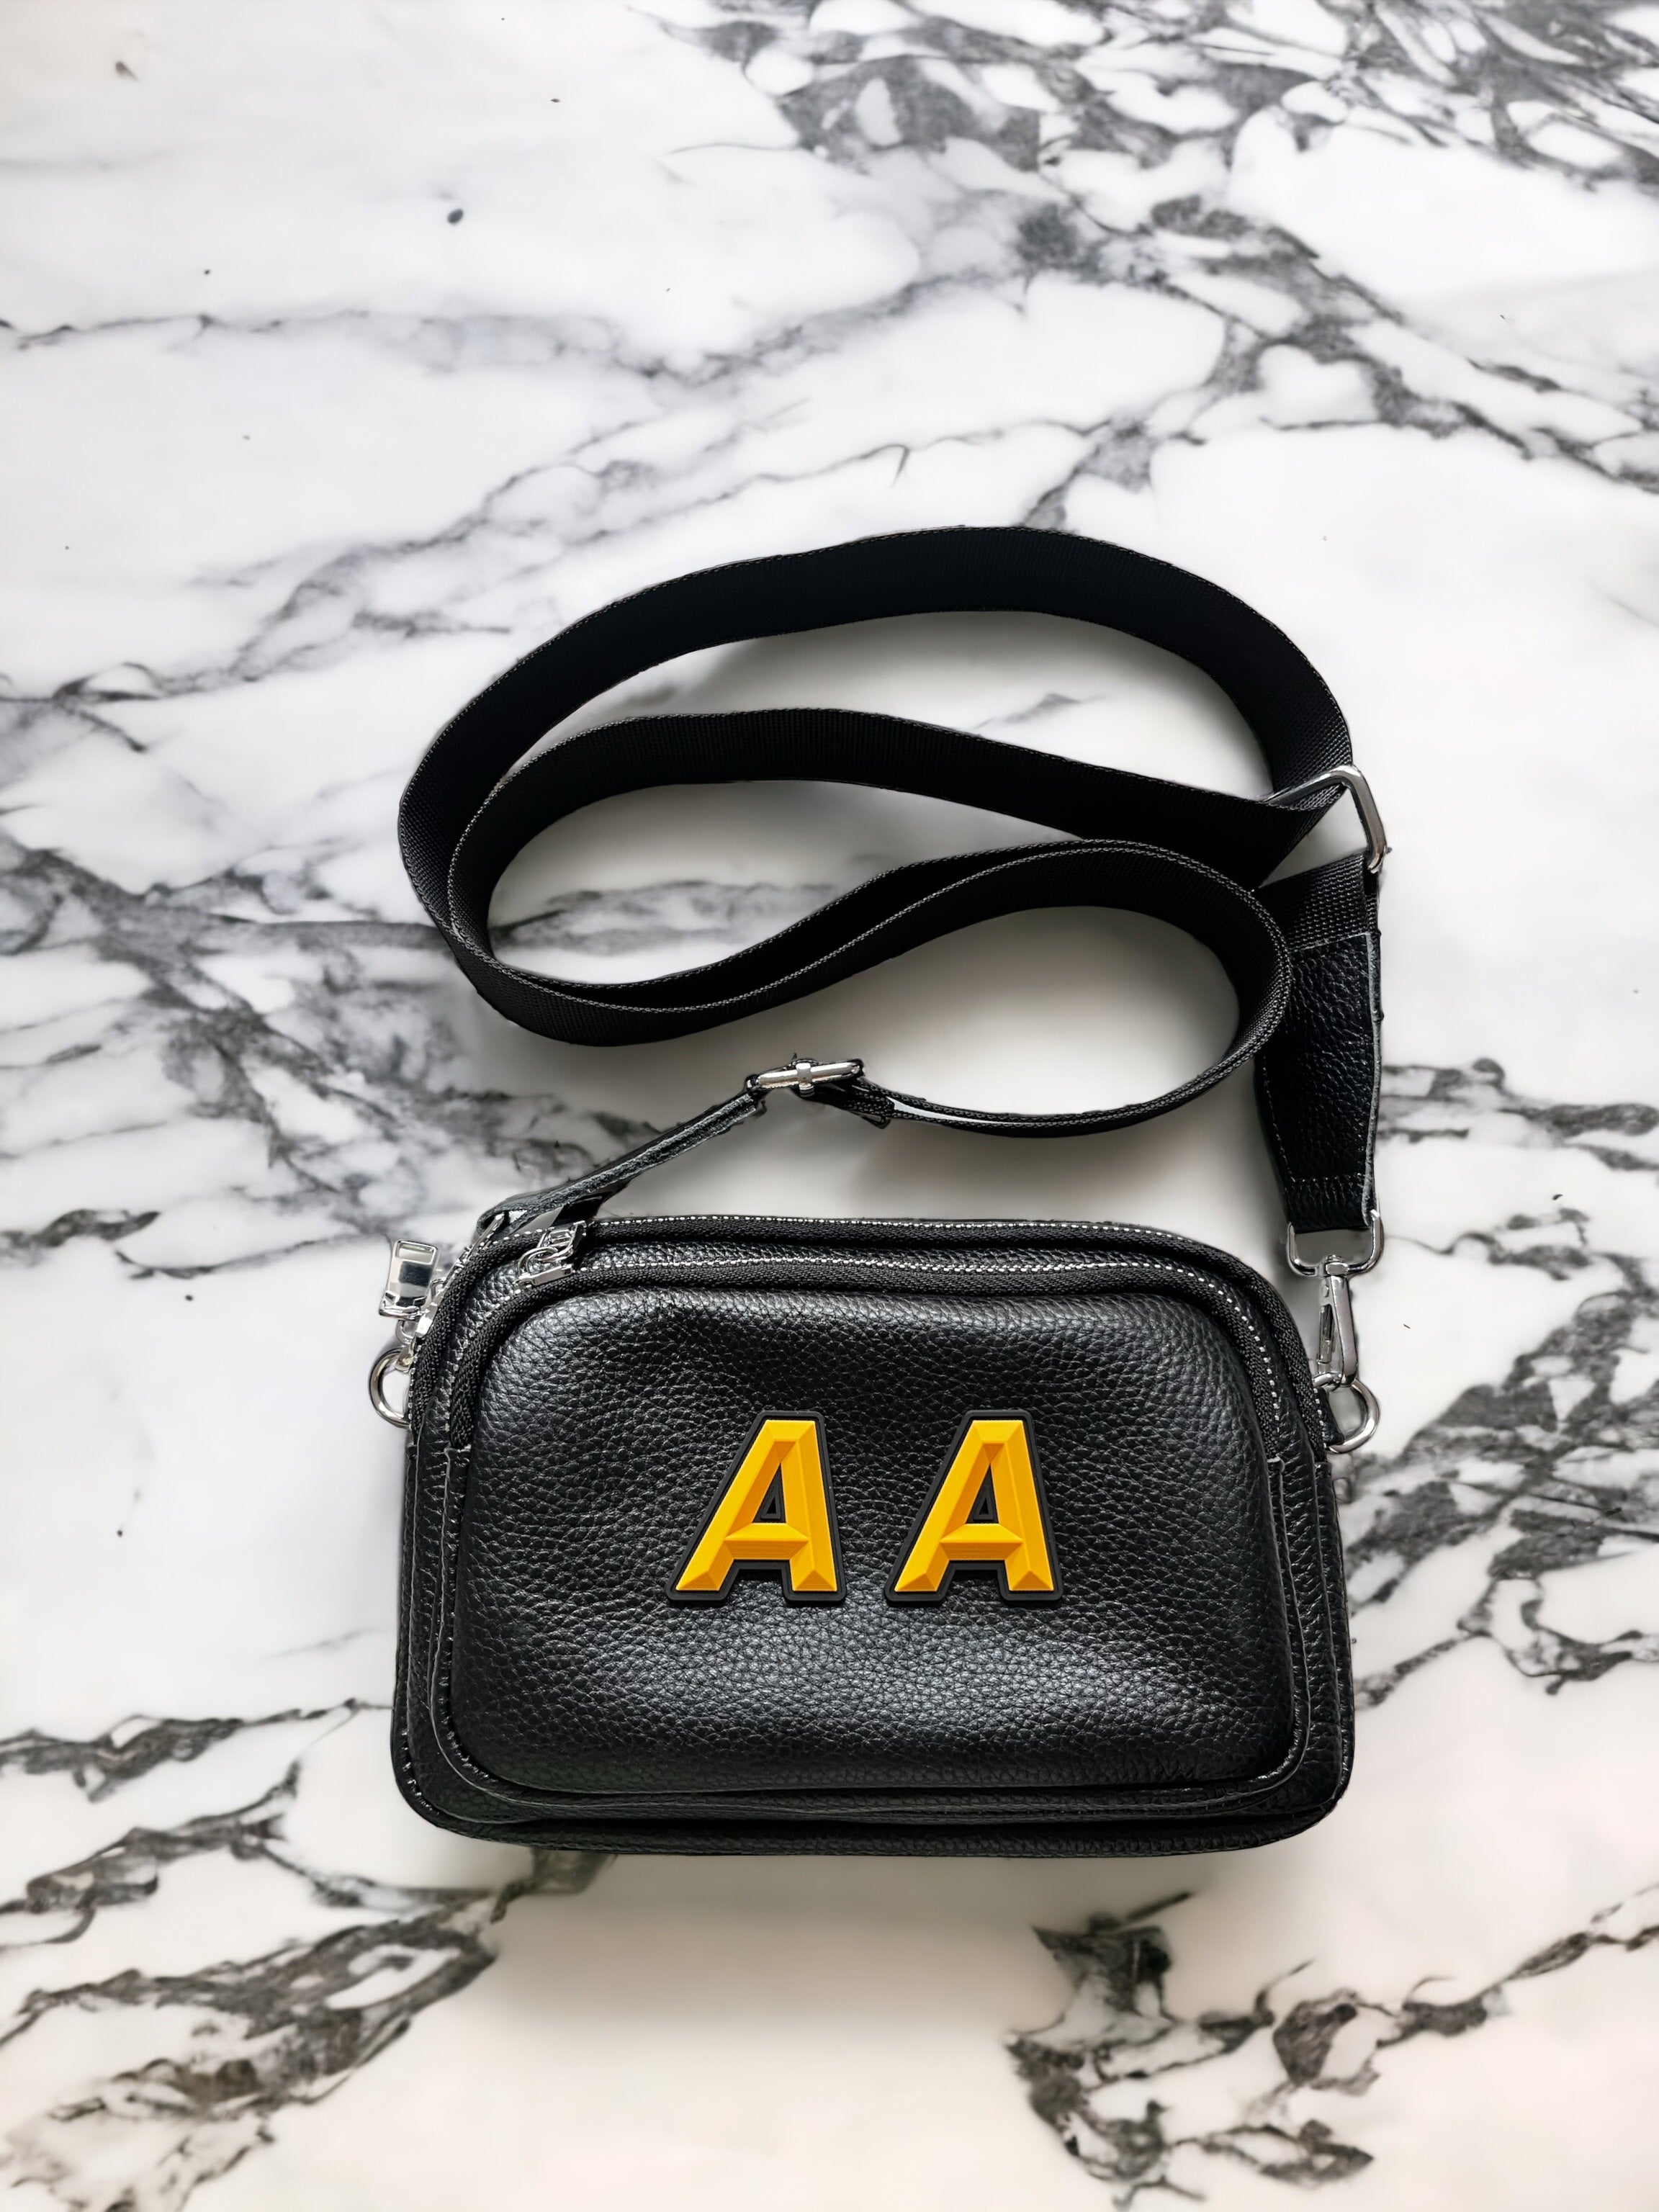 Personalised camera bags